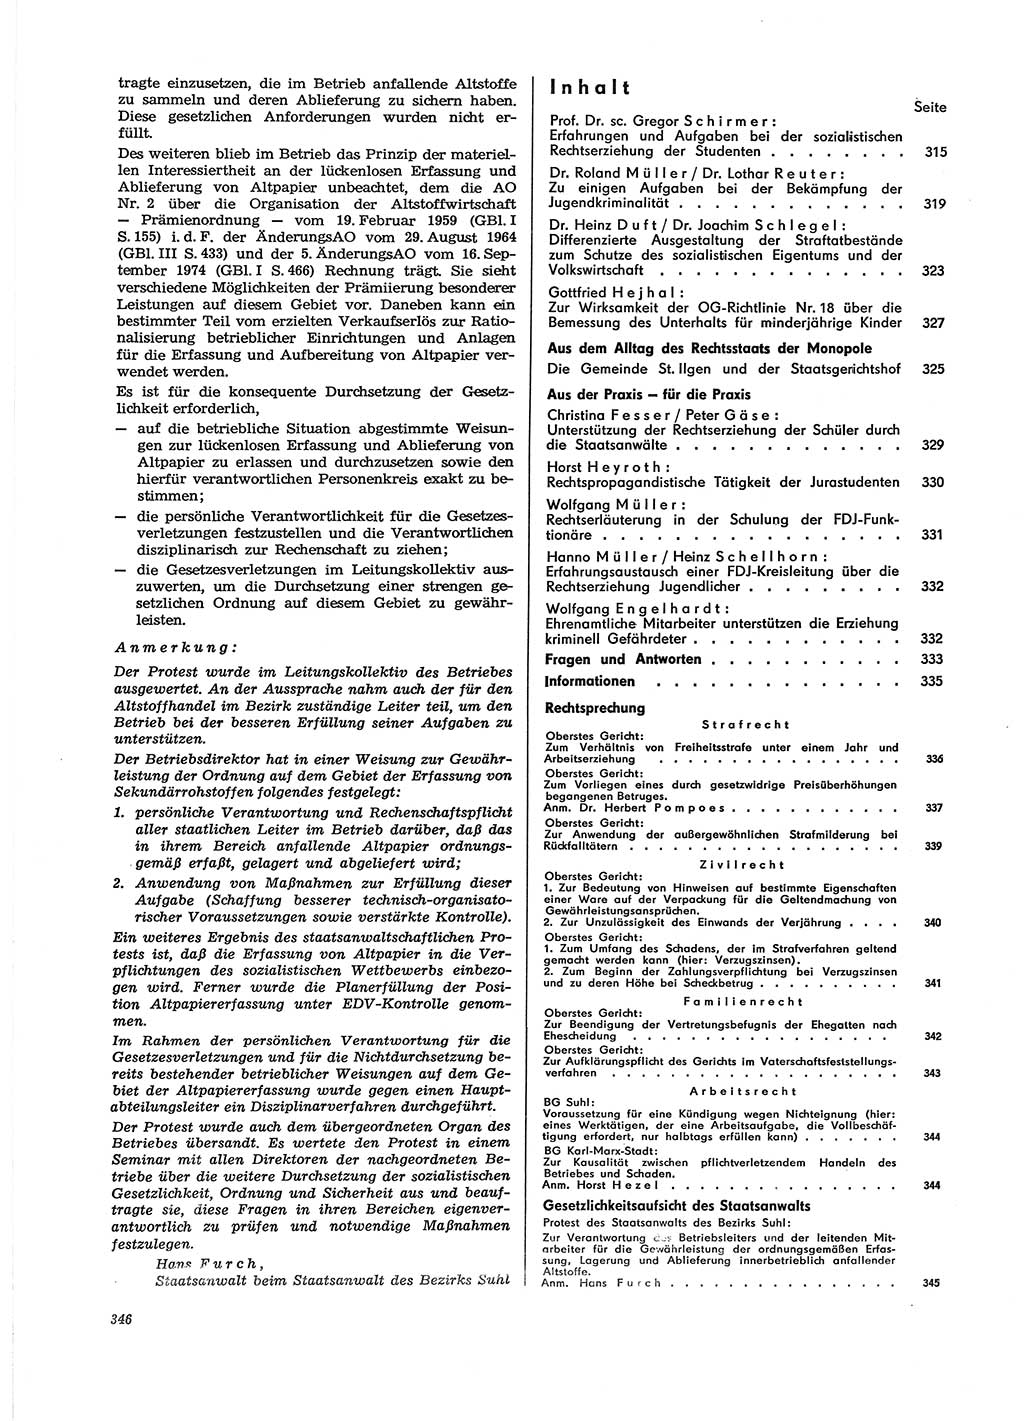 Neue Justiz (NJ), Zeitschrift für Recht und Rechtswissenschaft [Deutsche Demokratische Republik (DDR)], 29. Jahrgang 1975, Seite 346 (NJ DDR 1975, S. 346)